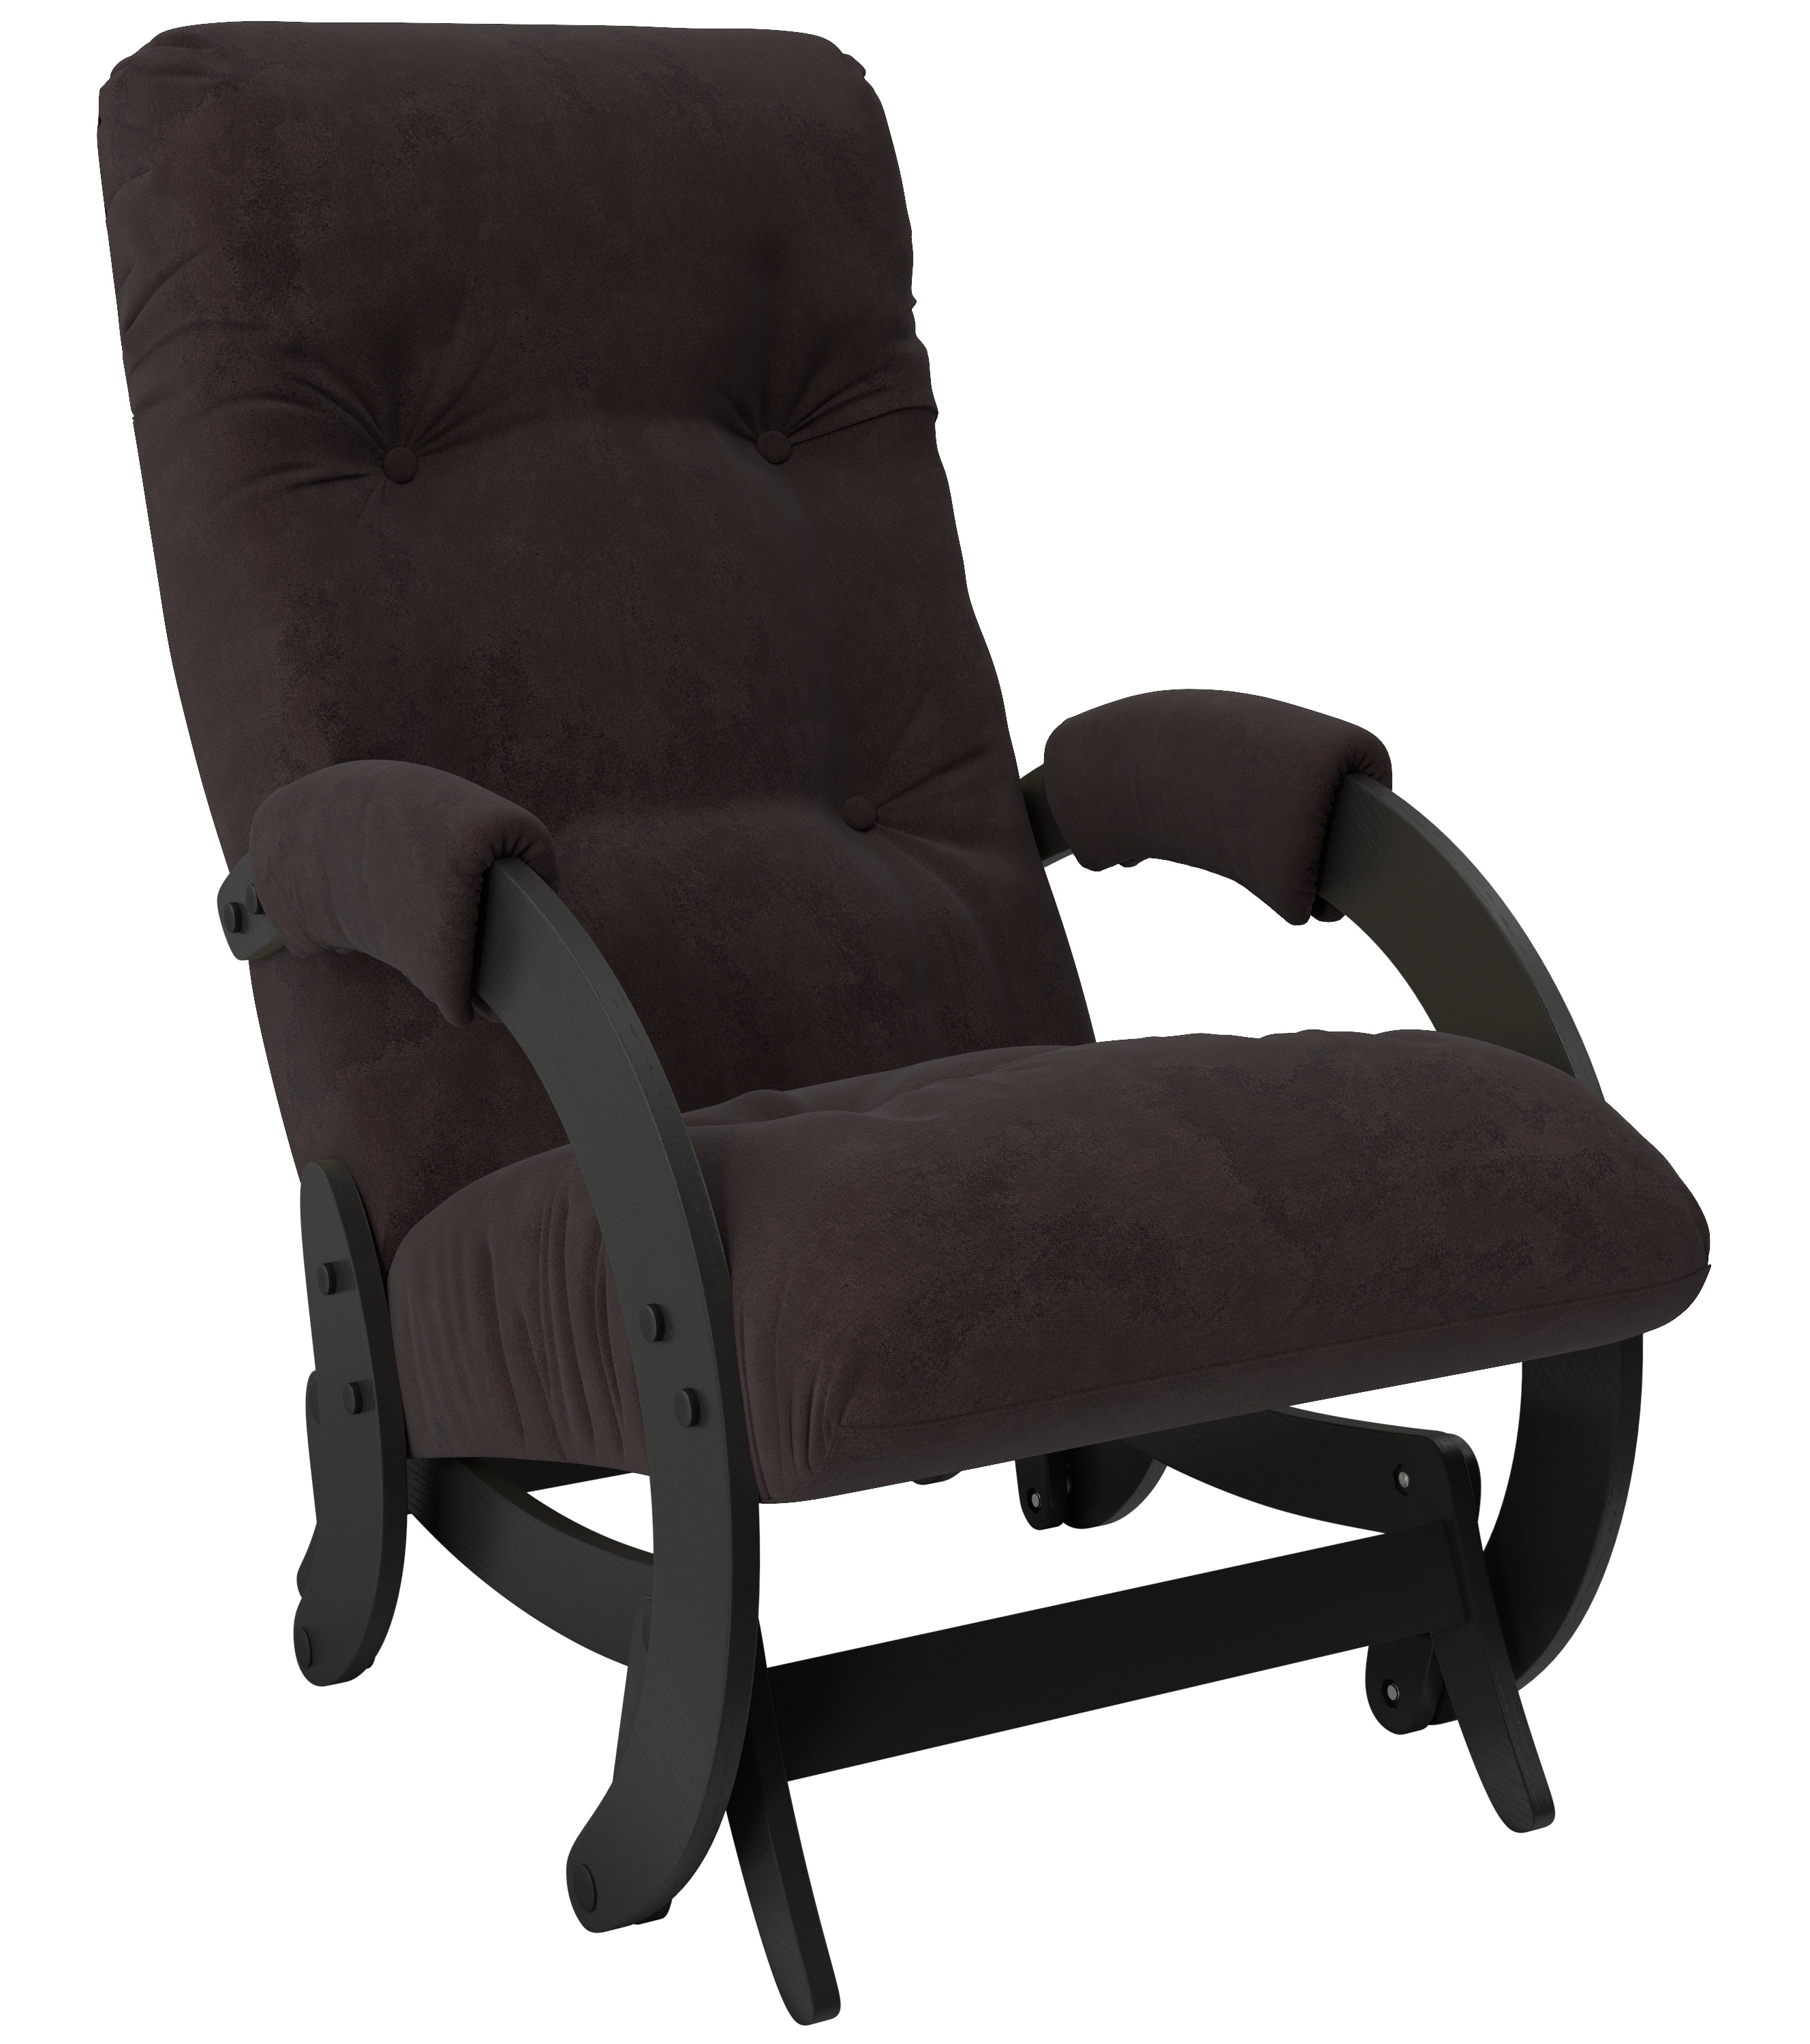 Кресло-качалка глайдер модель 68 с подлокотниками фото 1